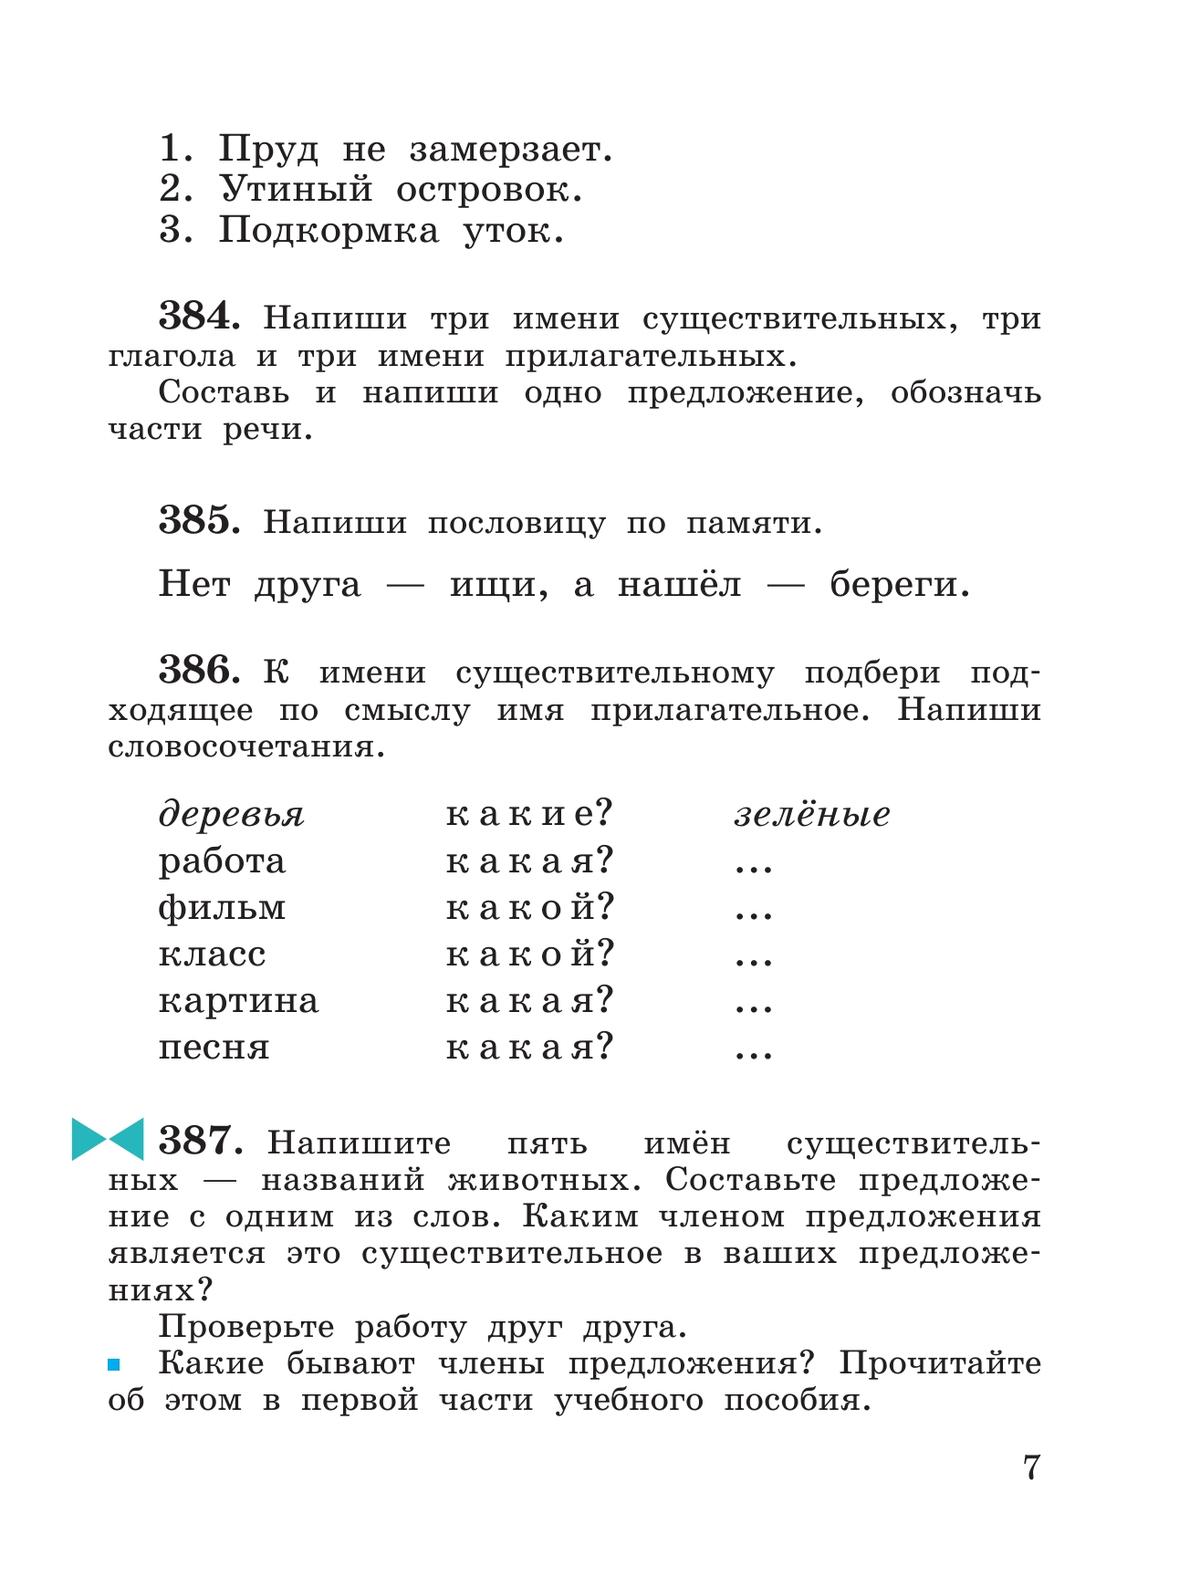 Русский язык. 3 класс. Учебное пособие. В 2 частях. Ч. 2 8